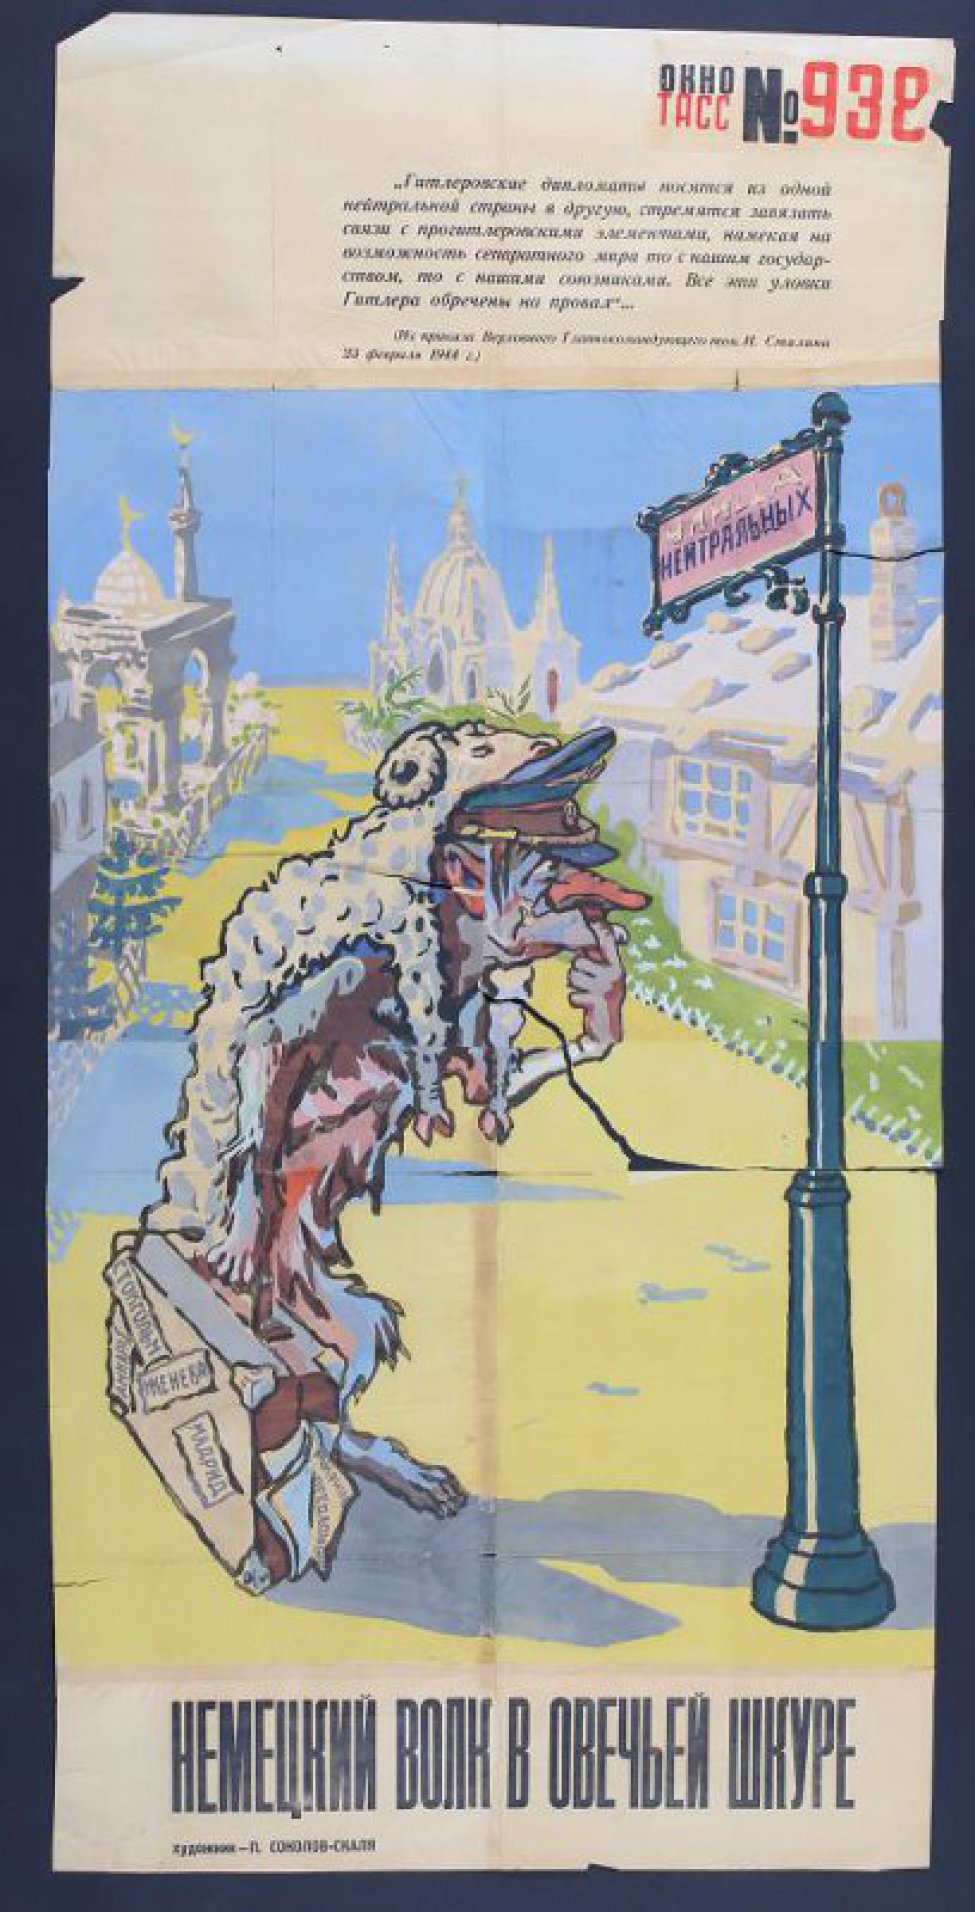 Изображено: по улице южного города идет Гитлер в образе волка с овечьей шкурой, в руках у него чемодан.